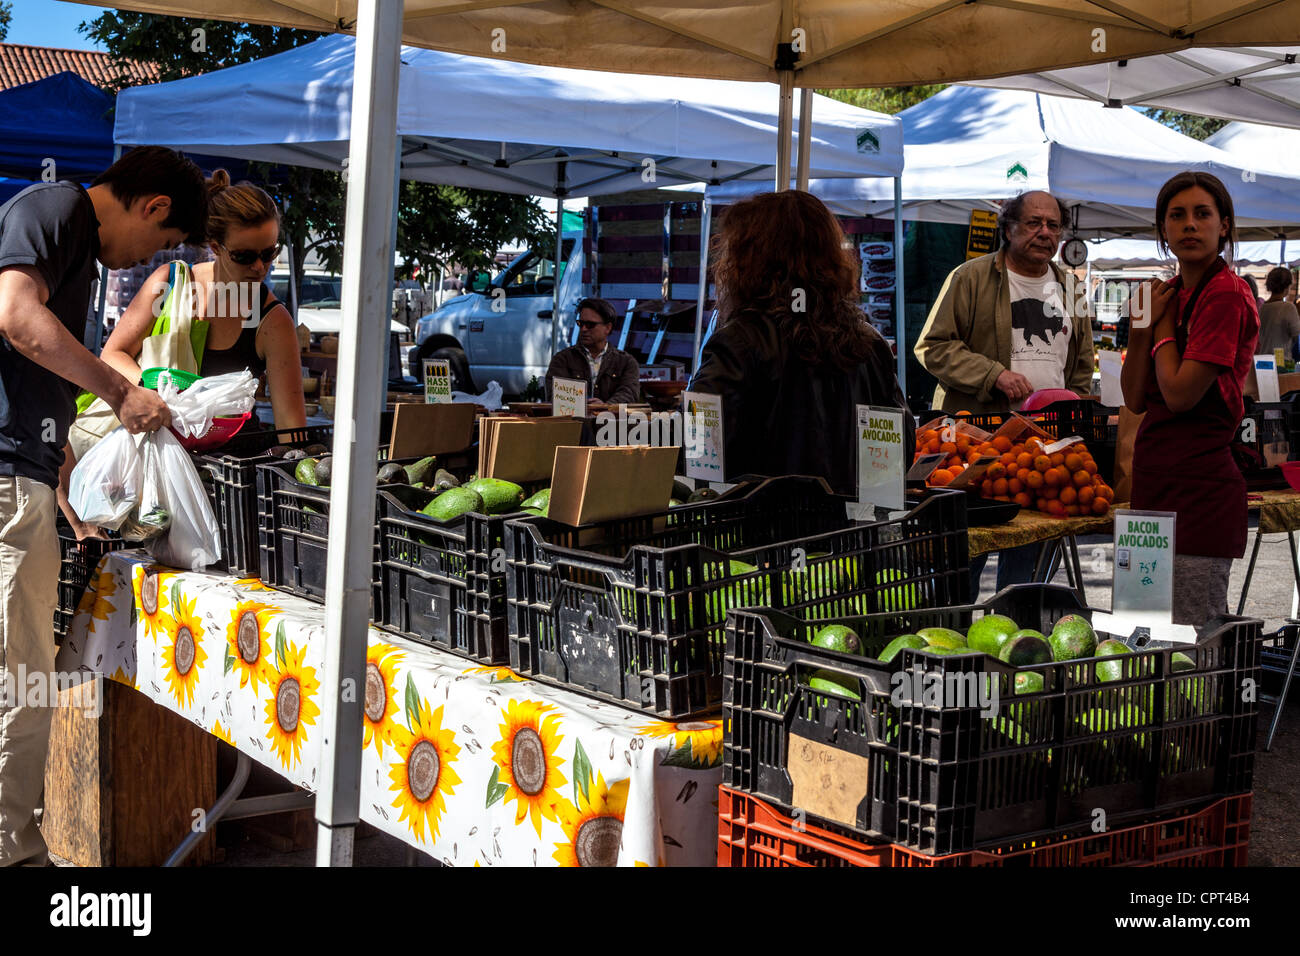 Szenen aus dem Sunday Ojai California USA Farmers Market, auf dem alle Produkte und Waren biologisch angebaut werden Stockfoto